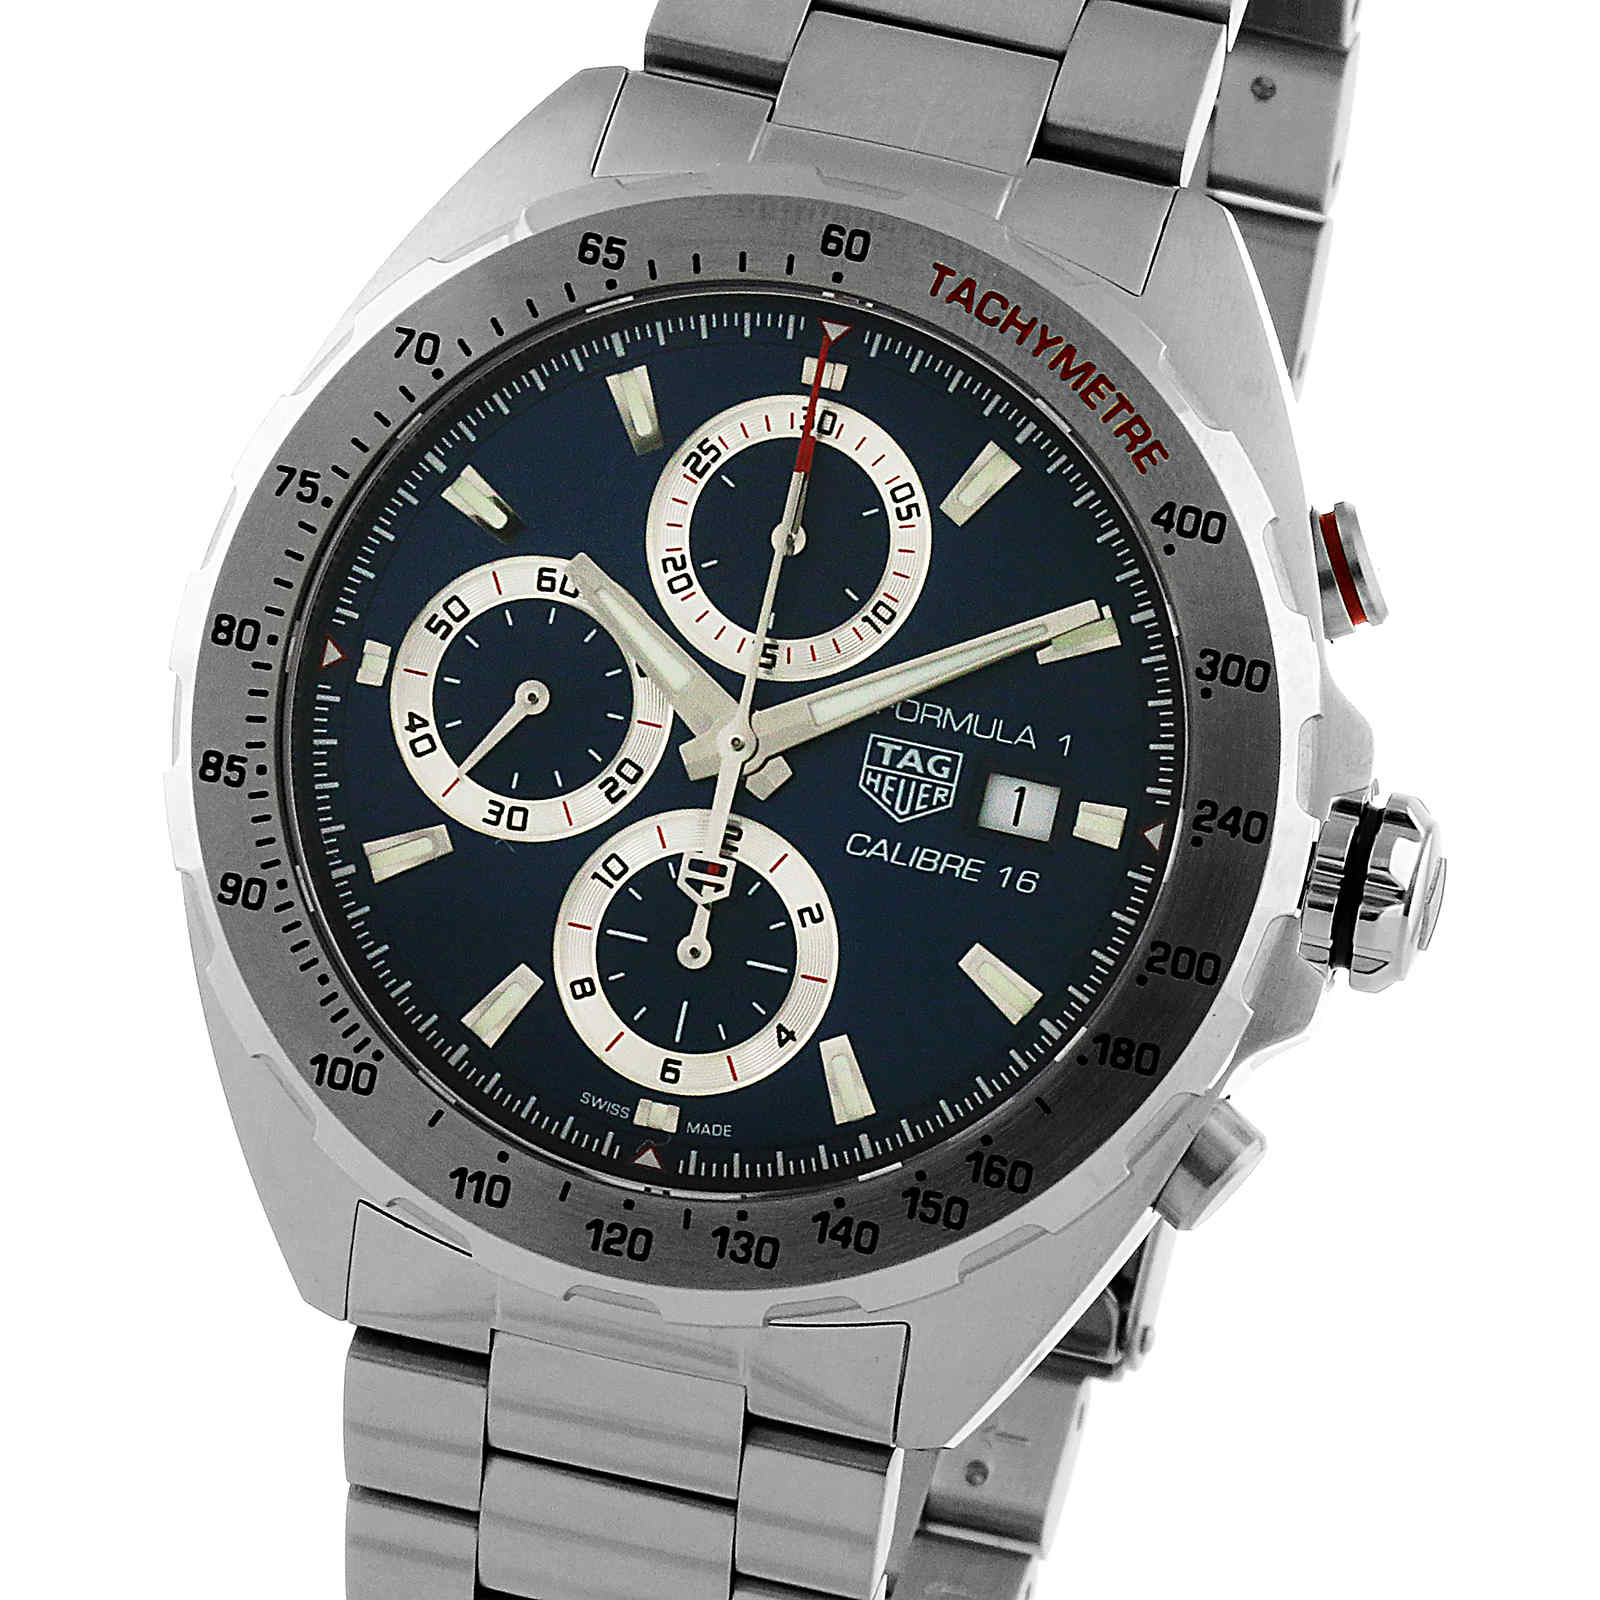 calibre watch brand